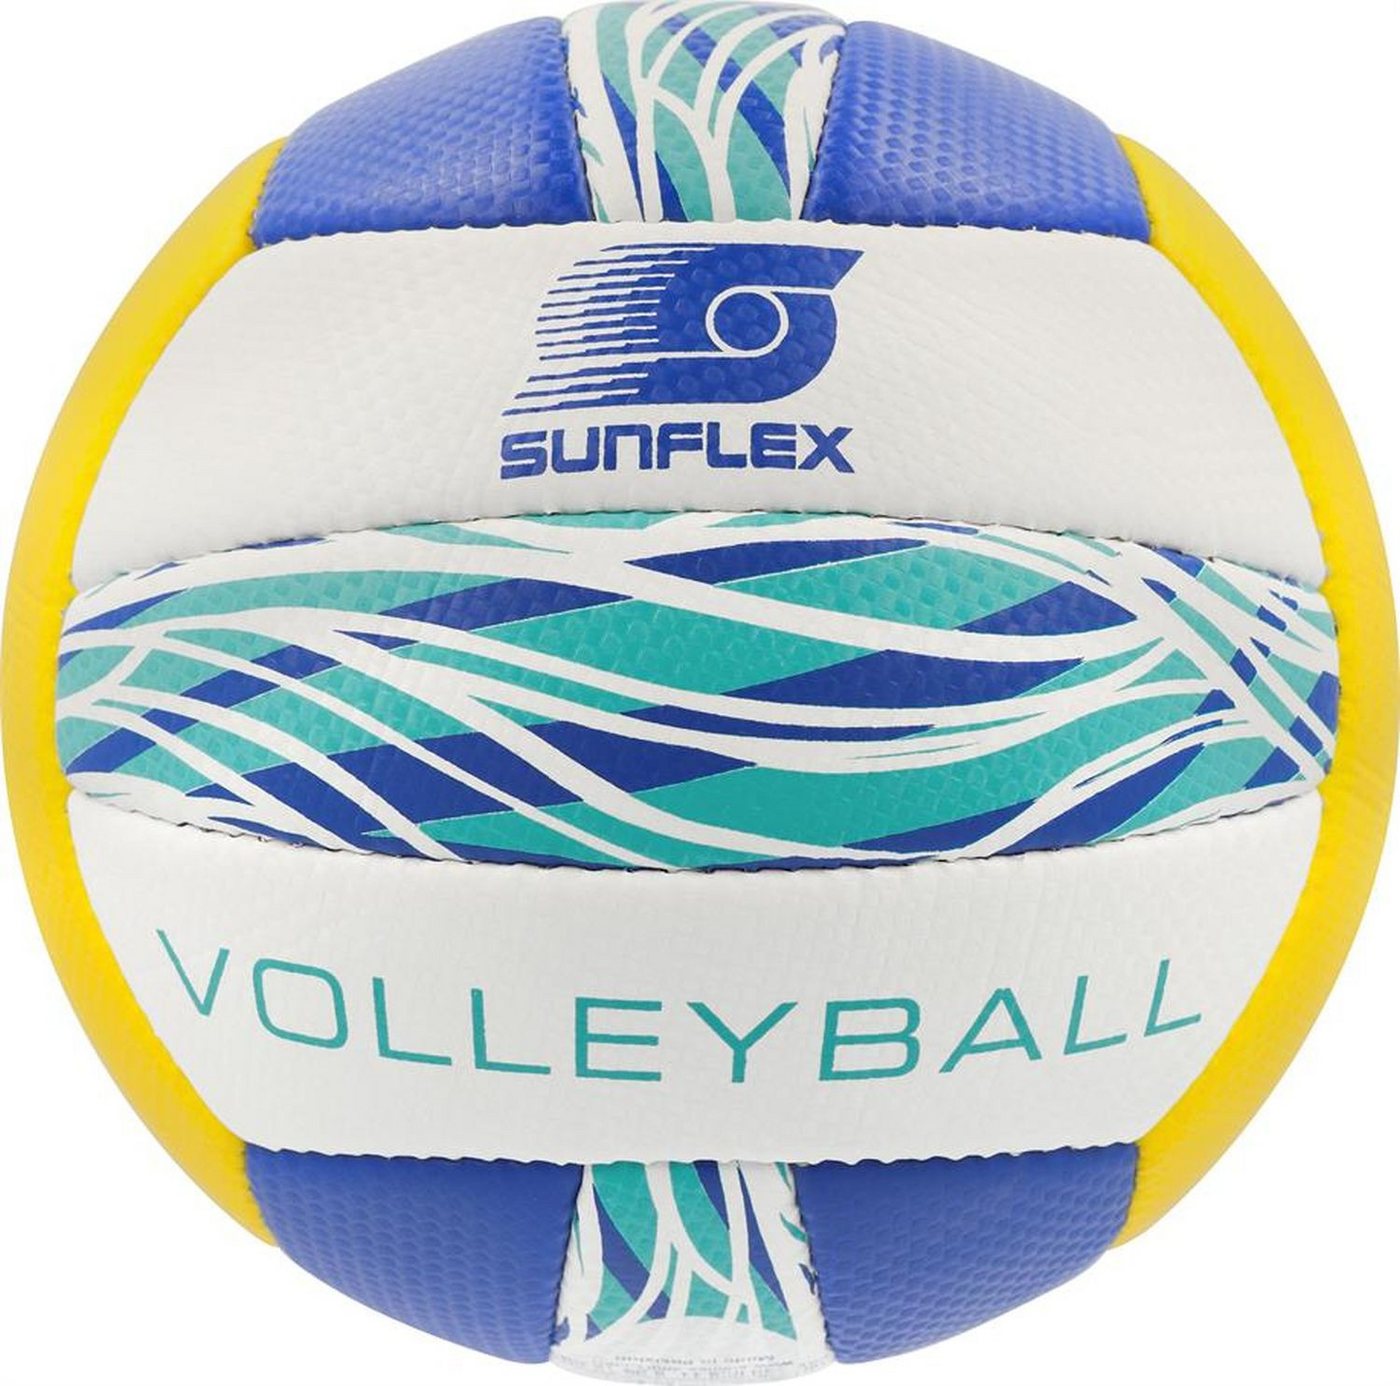 Sunflex Volleyball Volleyball Wave, Beachvolleyball Beachball Ball Sportball Spielball von Sunflex